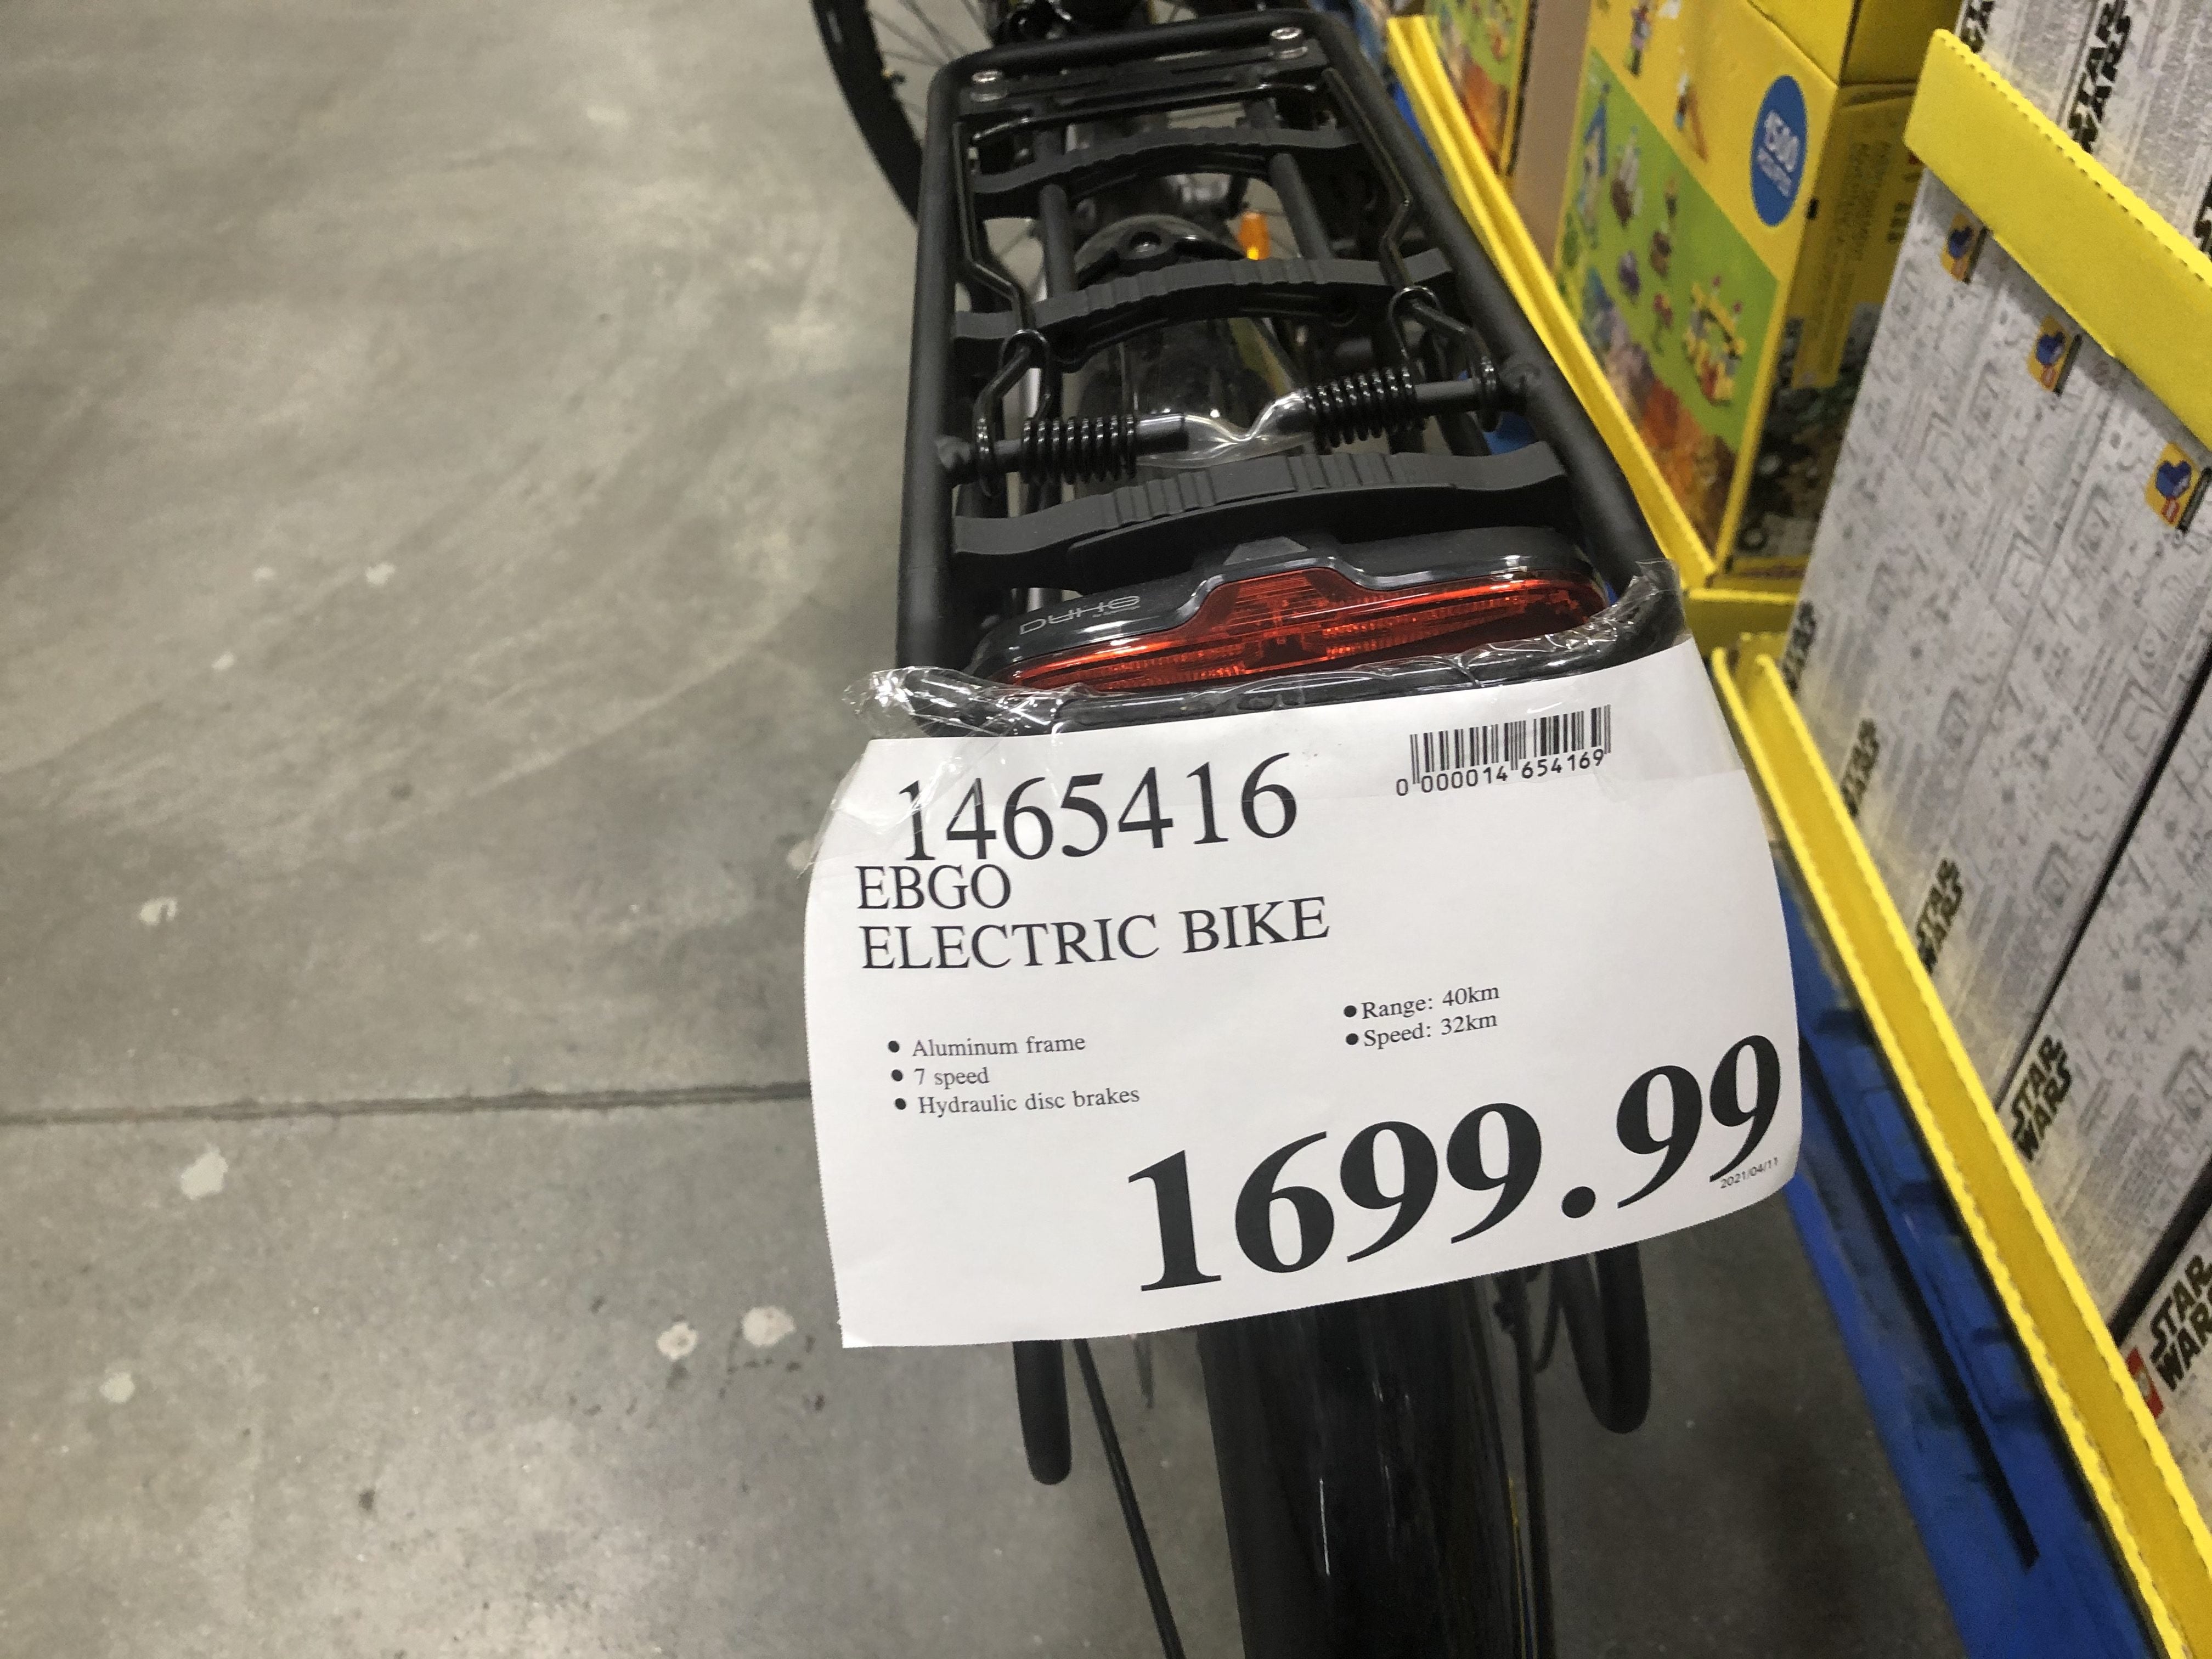 costco ebgo electric bike